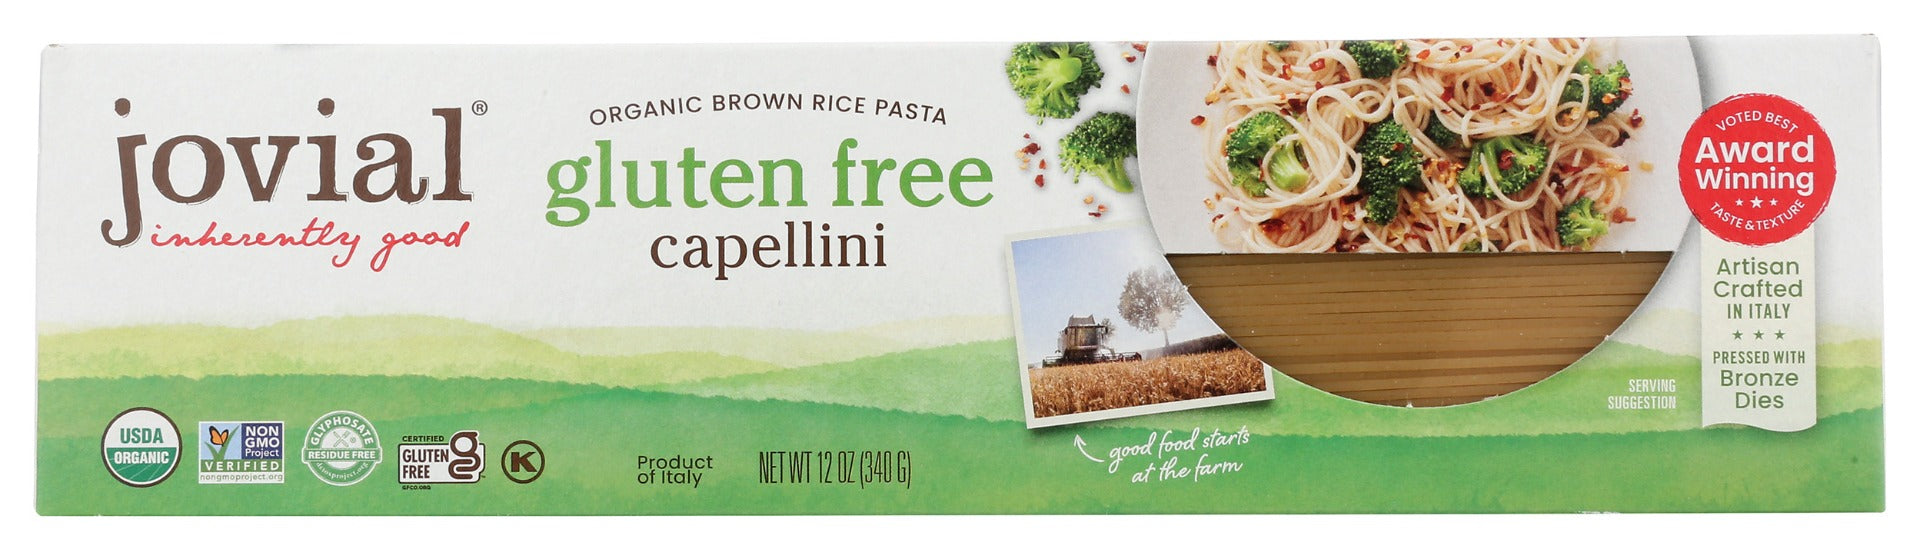 JOVIAL: Organic Brown Rice Pasta Gluten Free Capellini, 12 oz